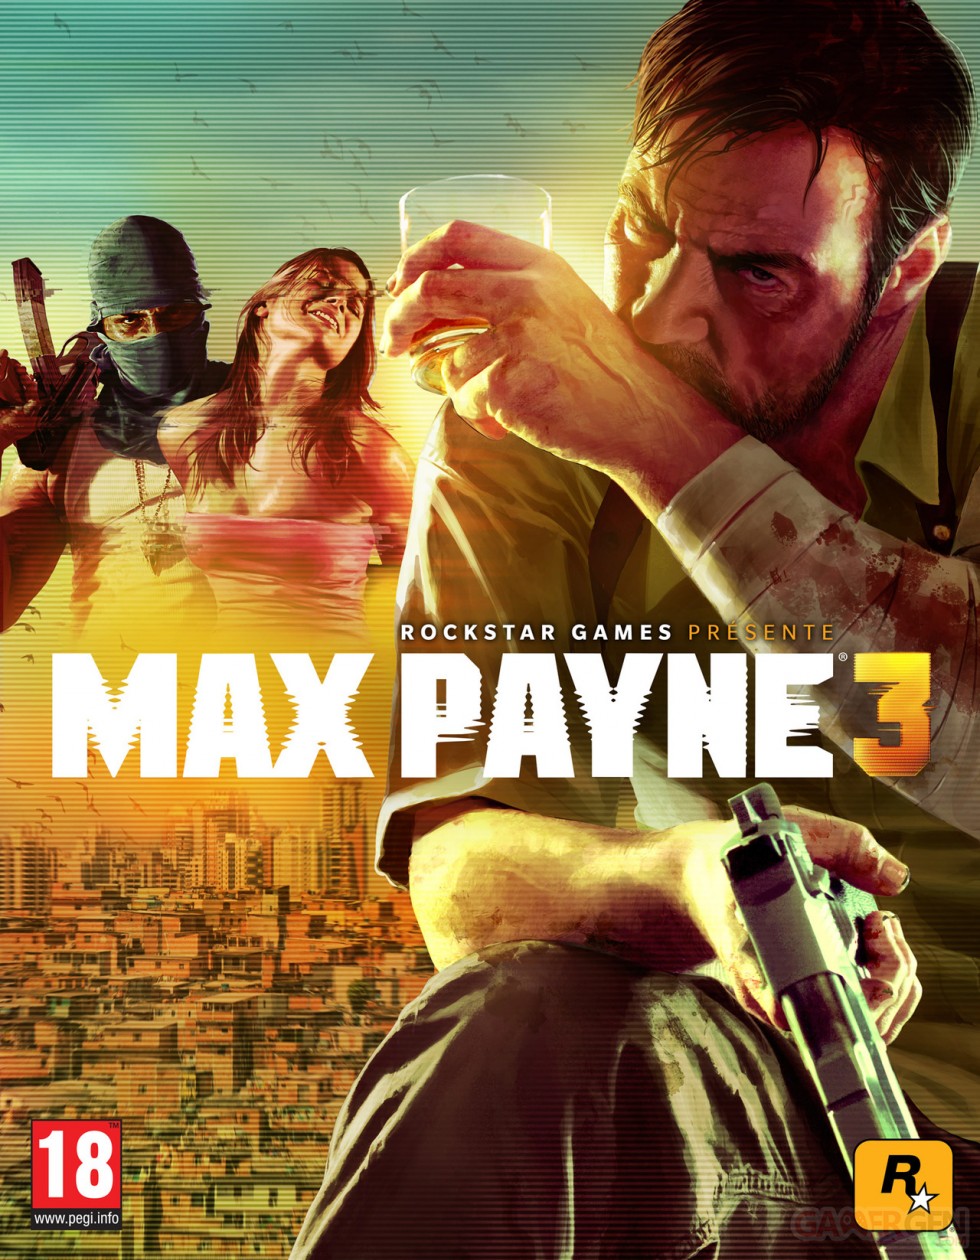 Max-Payne-3_09-09-2011_art-1